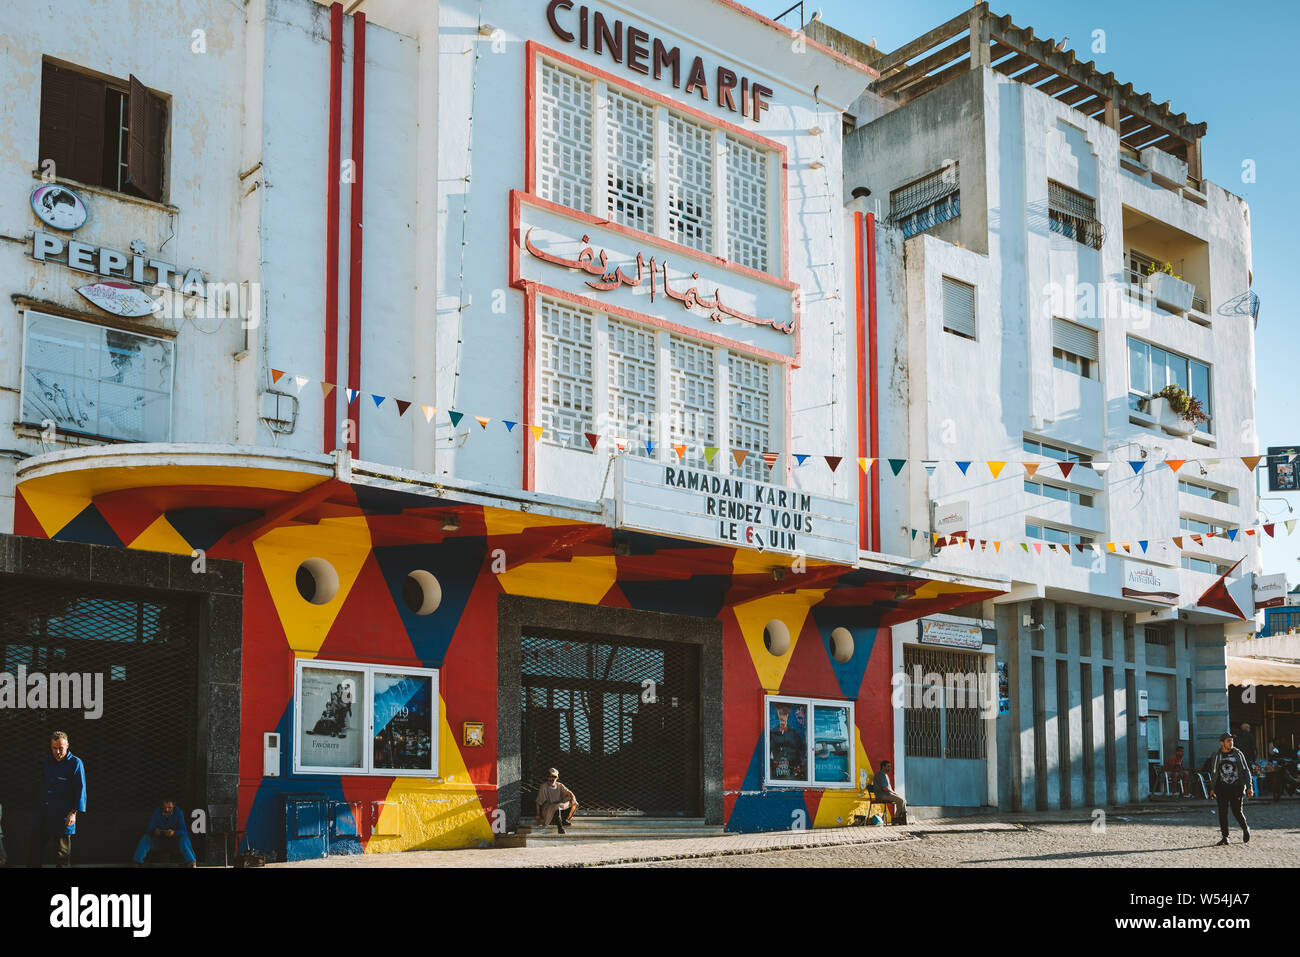 TANGER, MAROC - 11 MAI 2019 : La Cinémathèque de Tanger, le cinéma Rif, l'Afrique du Nord, premier cinéma centre culturel dans le cœur historique de Tanger, Banque D'Images